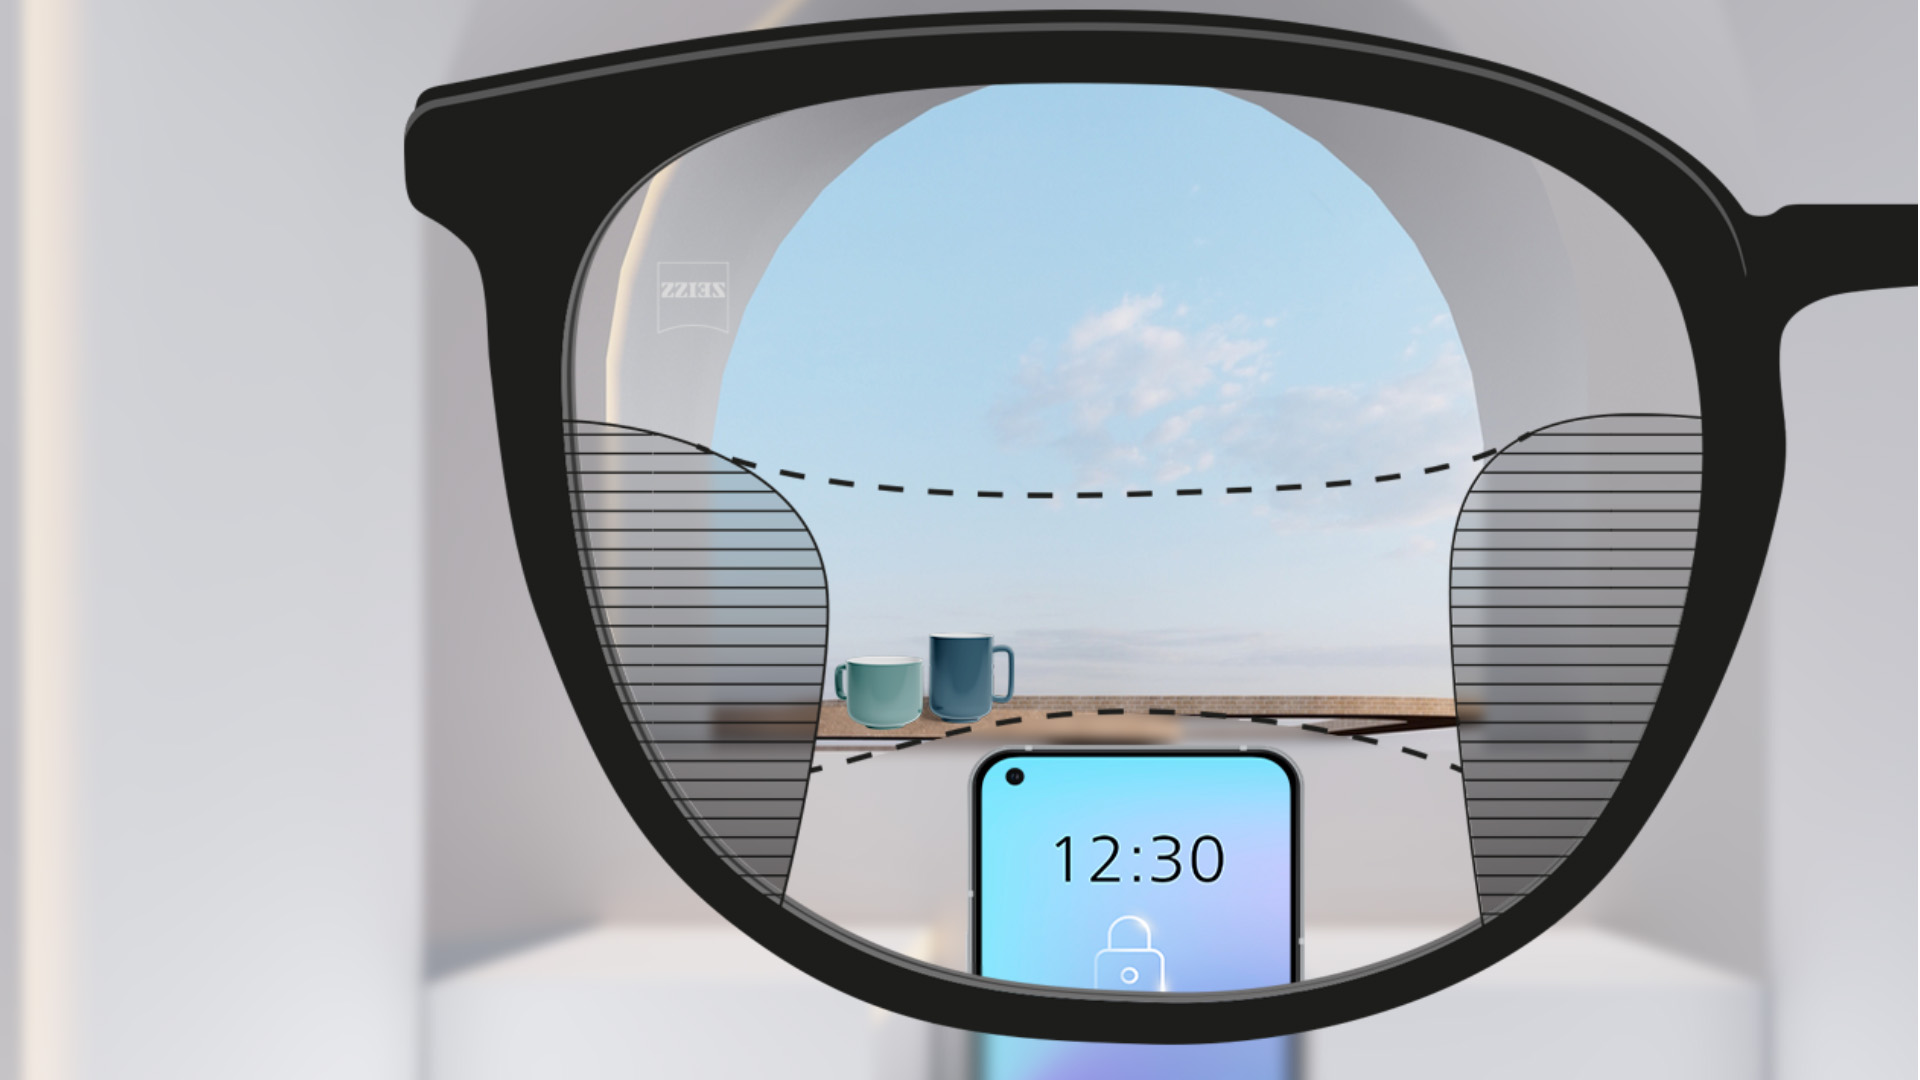 자이스 스마트라이프 누진 렌즈의 시점으로 본 모습. 저 멀리 스마트폰과 잔이 보이며, 렌즈는 완전히 선명하고 왼쪽과 오른쪽의 흐릿한 부분은 좁다.